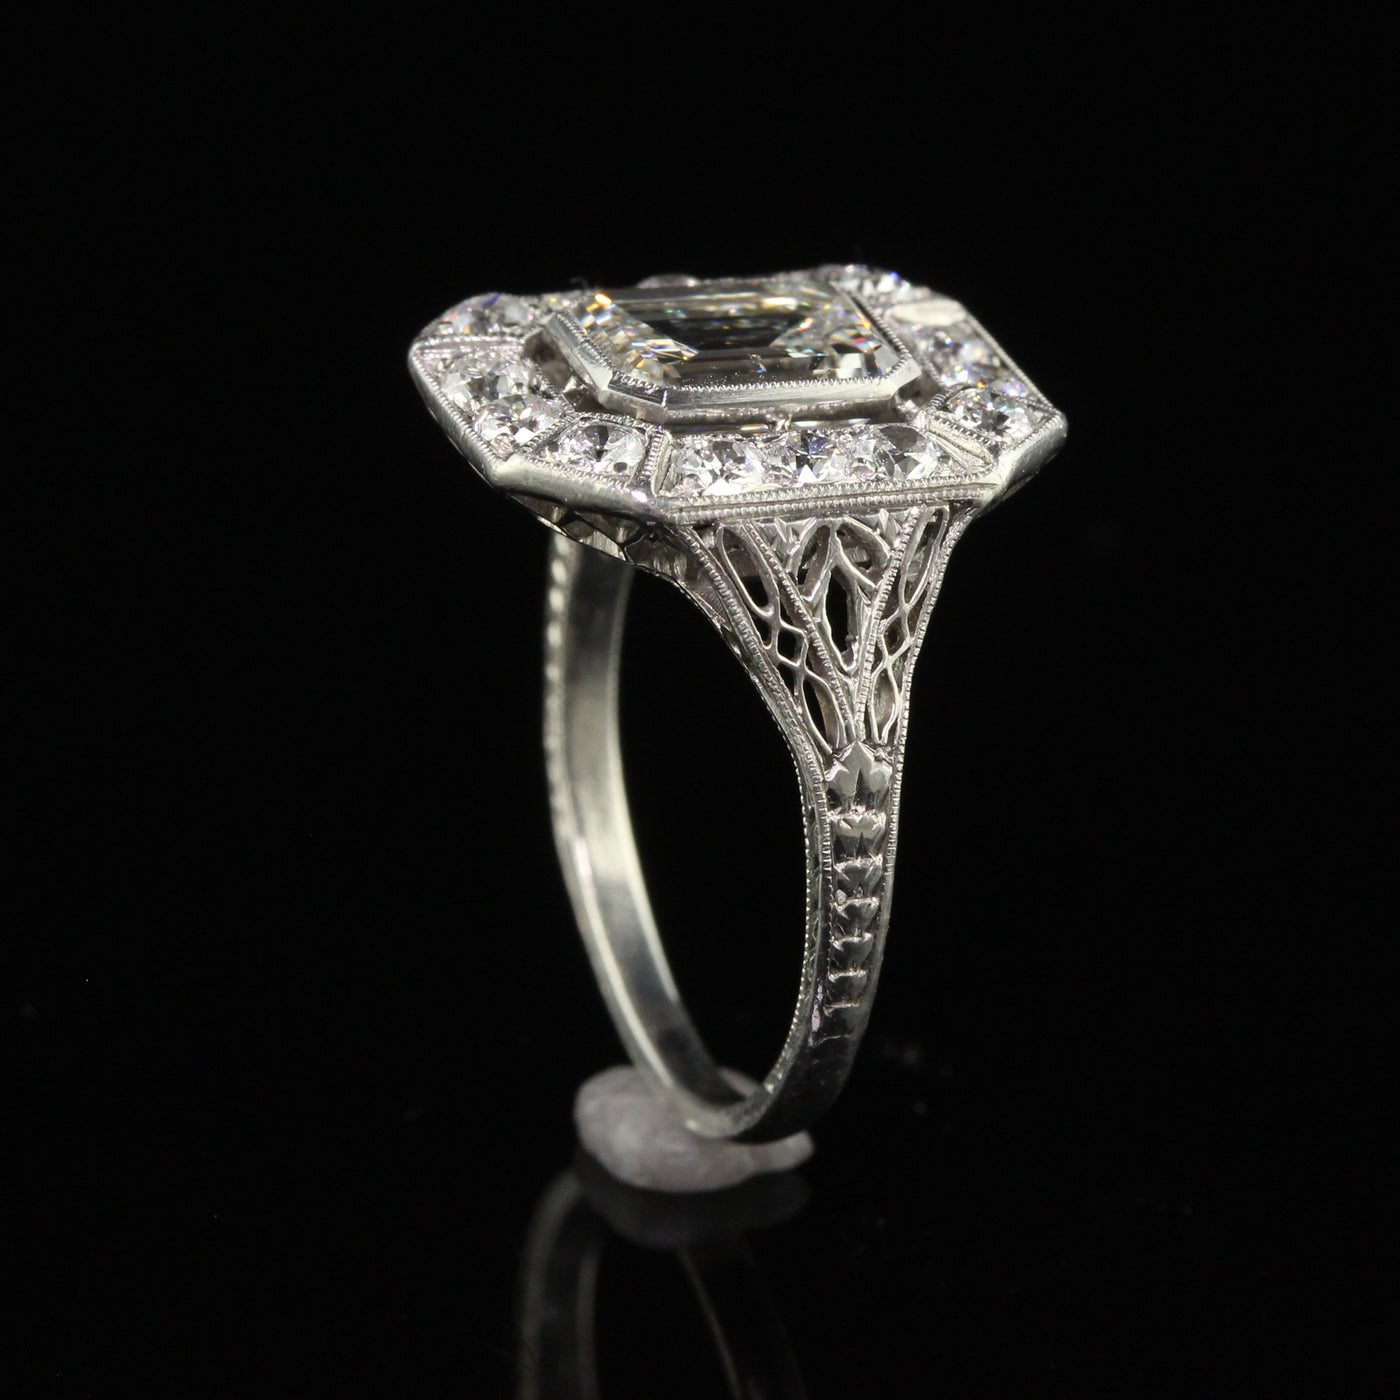 Antique Art Deco Emerald Cut Diamond Filigree Engagement Ring - GIA